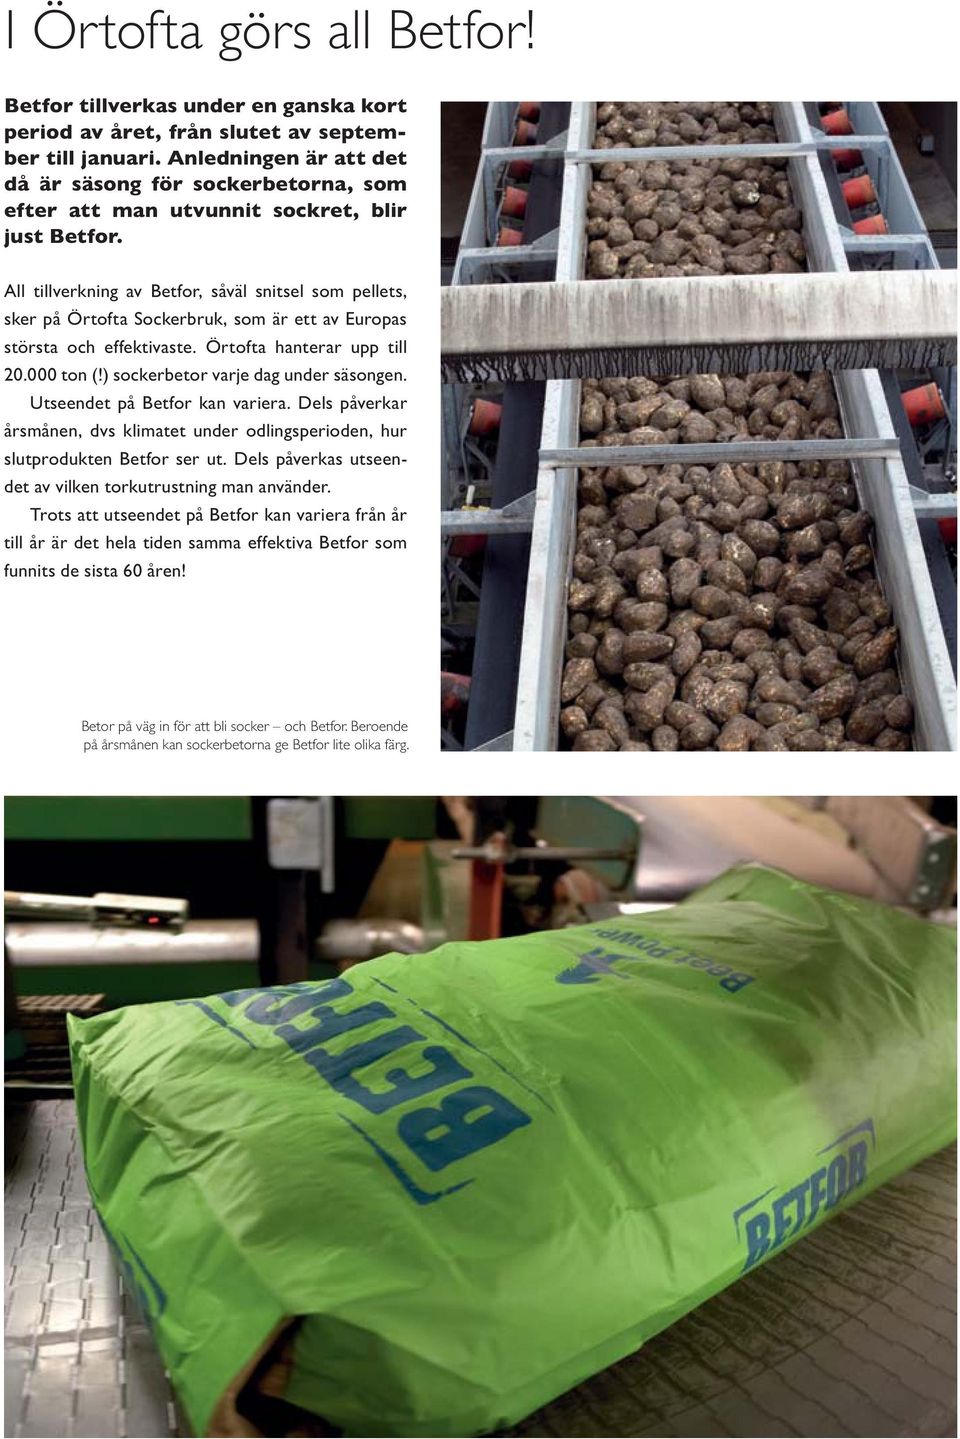 All tillverkning av Betfor, såväl snitsel som pellets, sker på Örtofta Sockerbruk, som är ett av Europas största och effektivaste. Örtofta hanterar upp till 20.000 ton (!